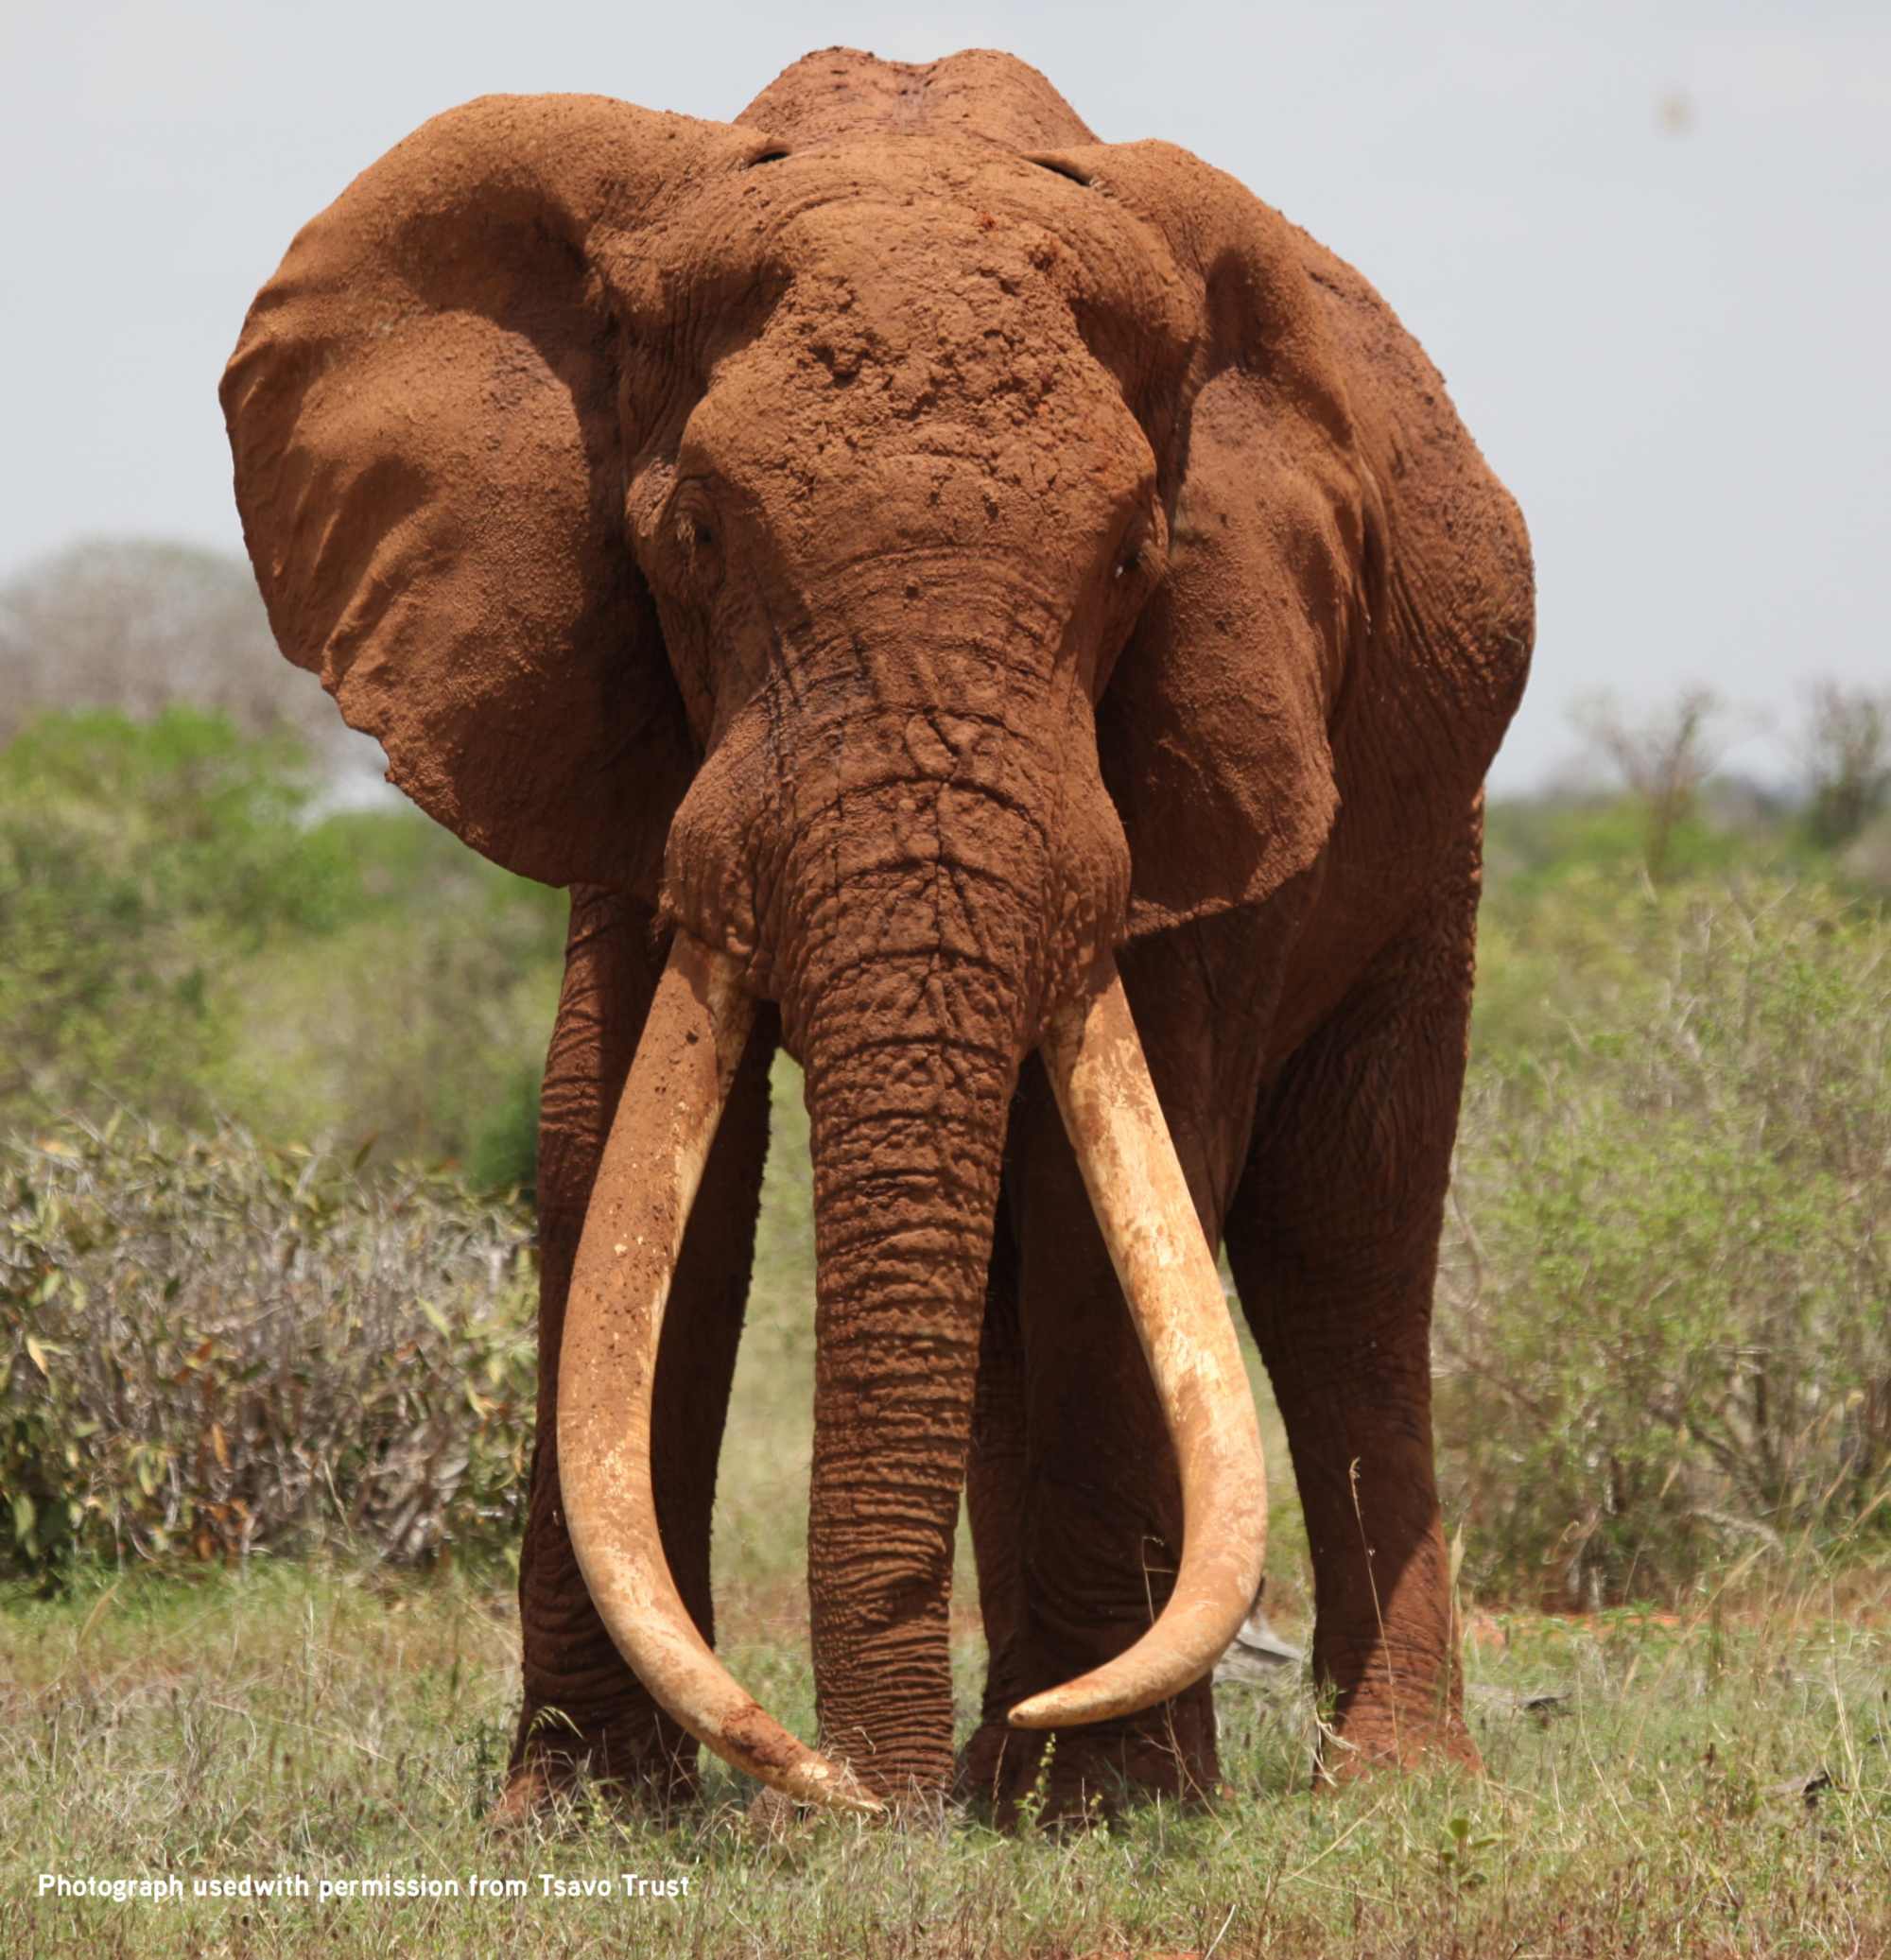 Giant elephant photo